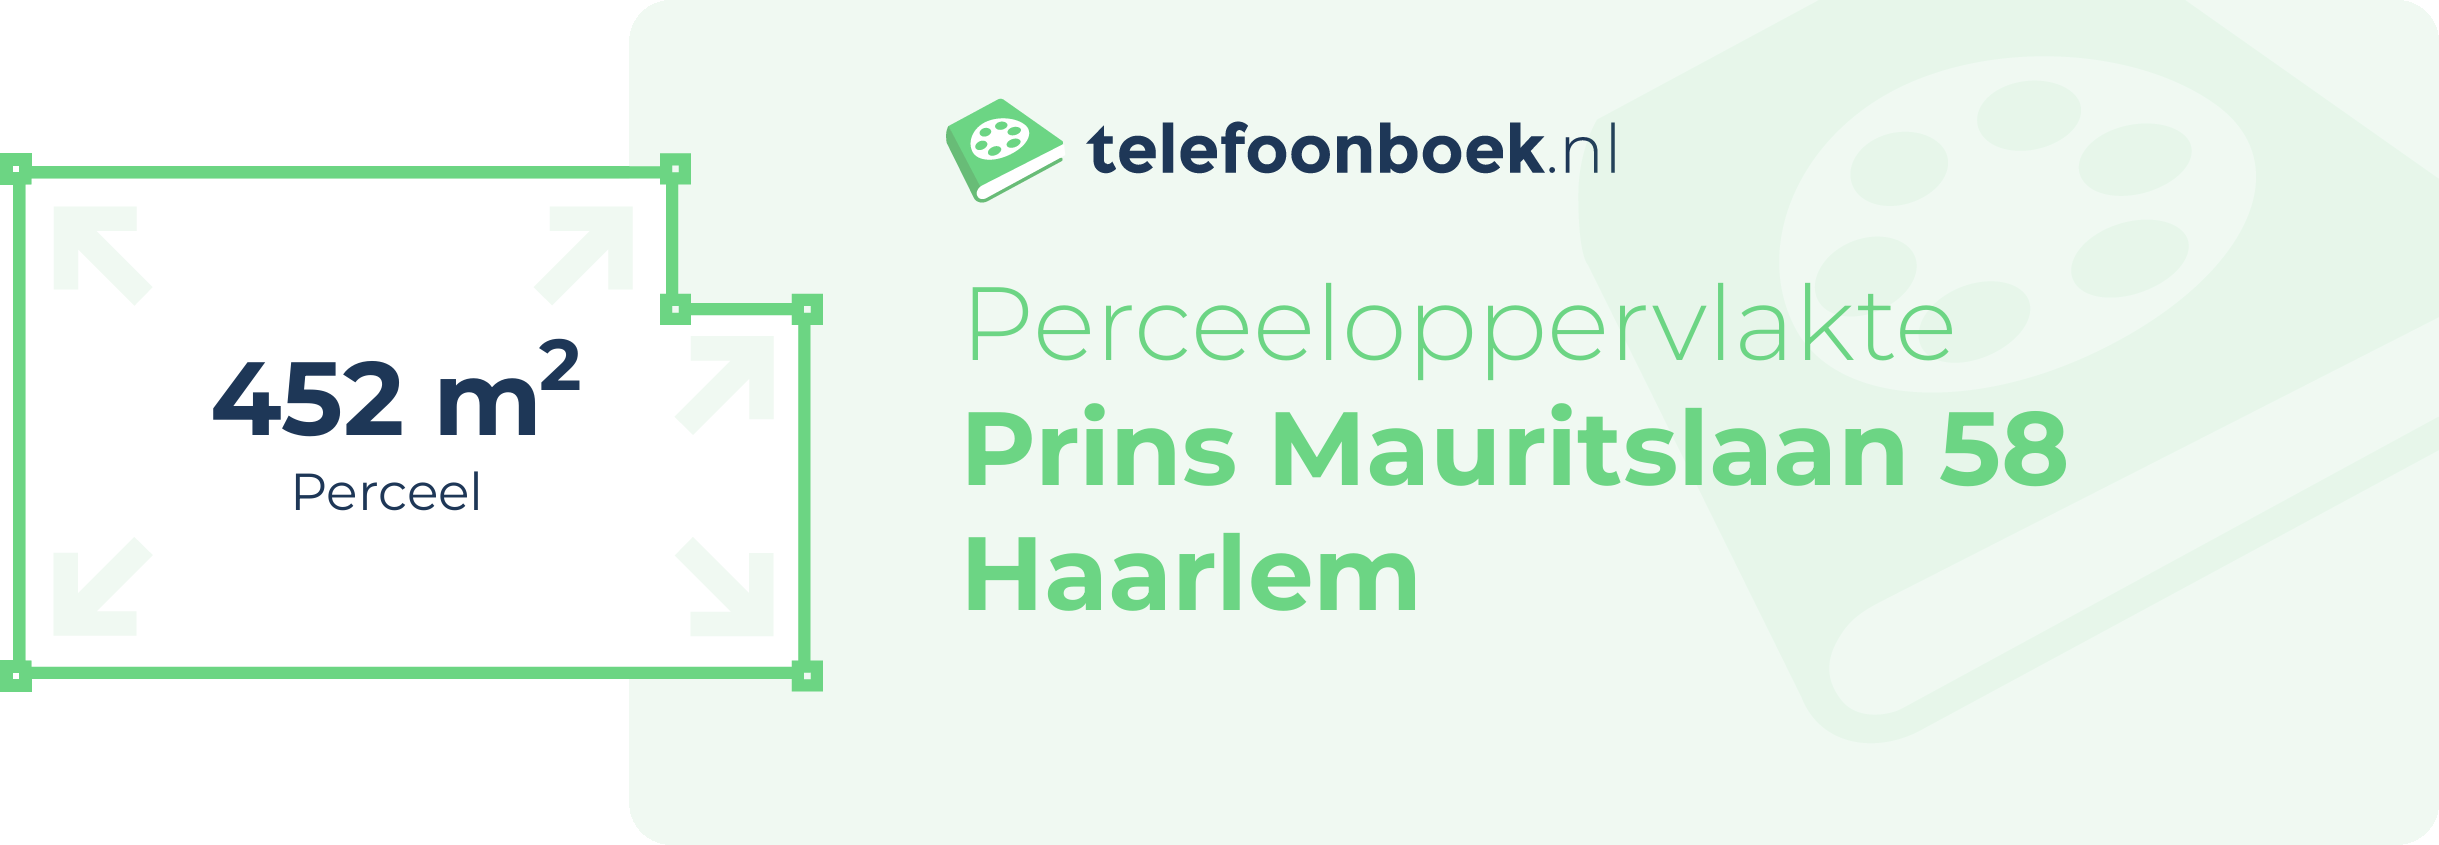 Perceeloppervlakte Prins Mauritslaan 58 Haarlem